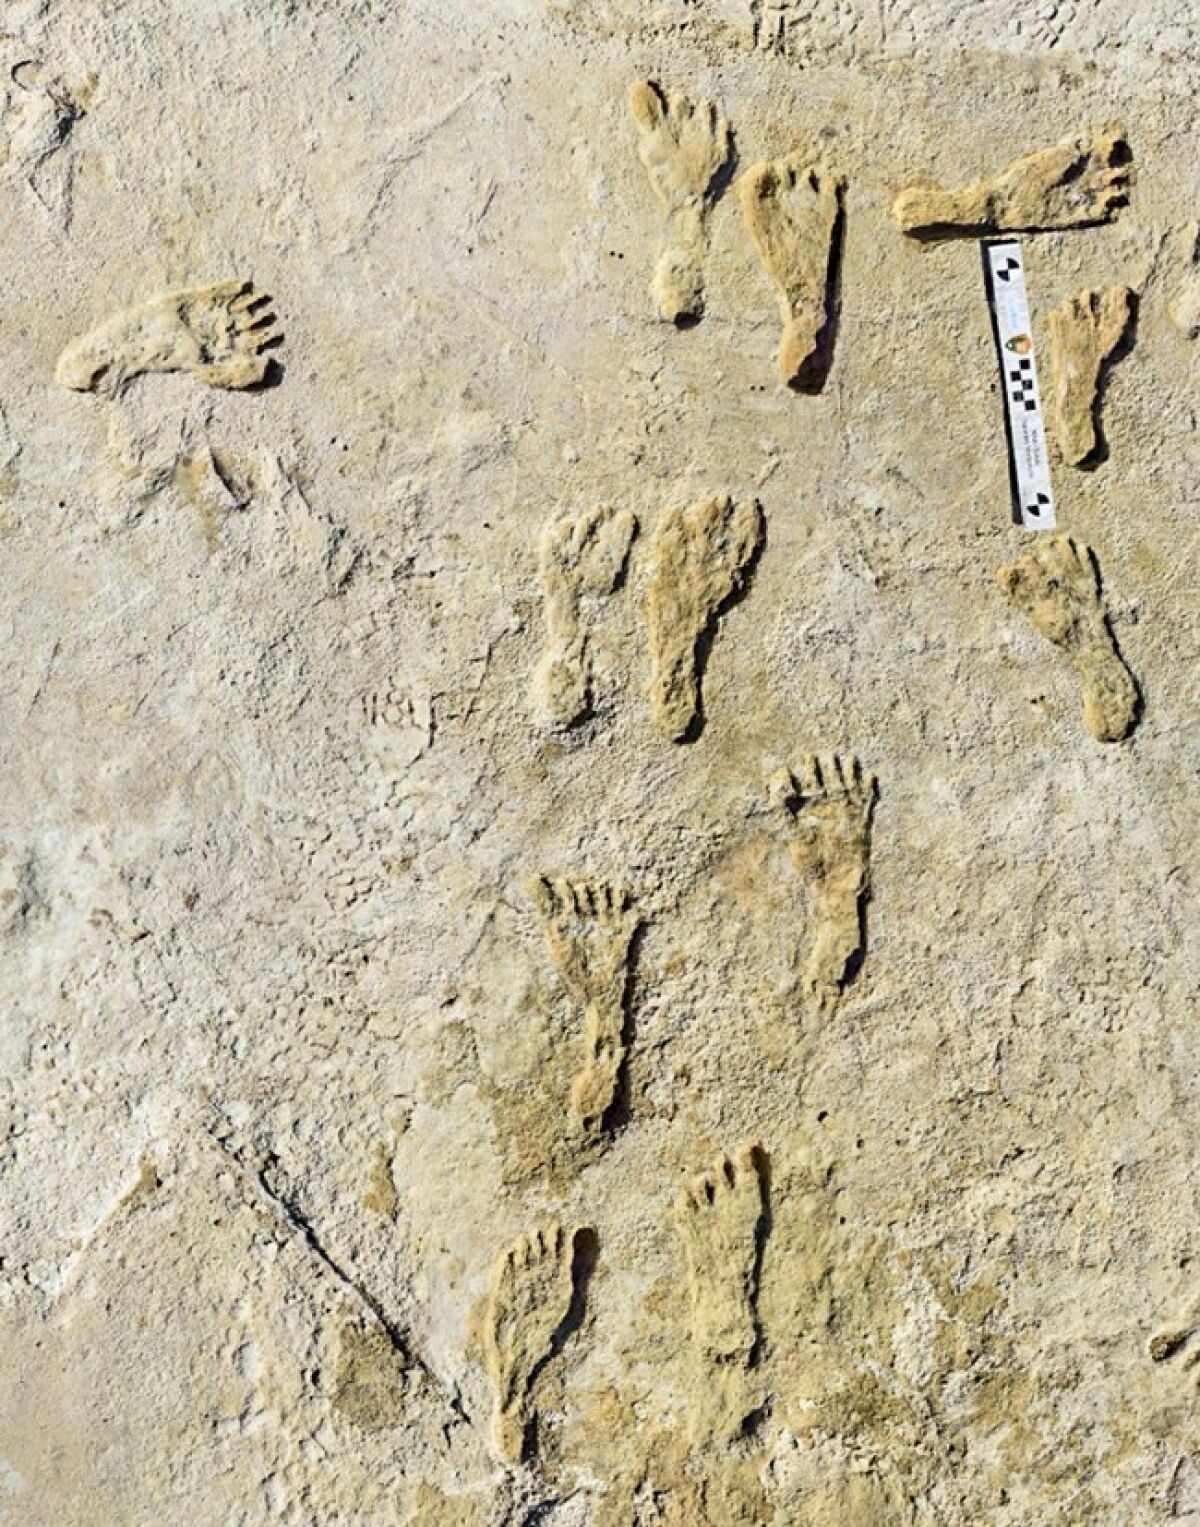 Fossilized footprints found in white gypsum. 